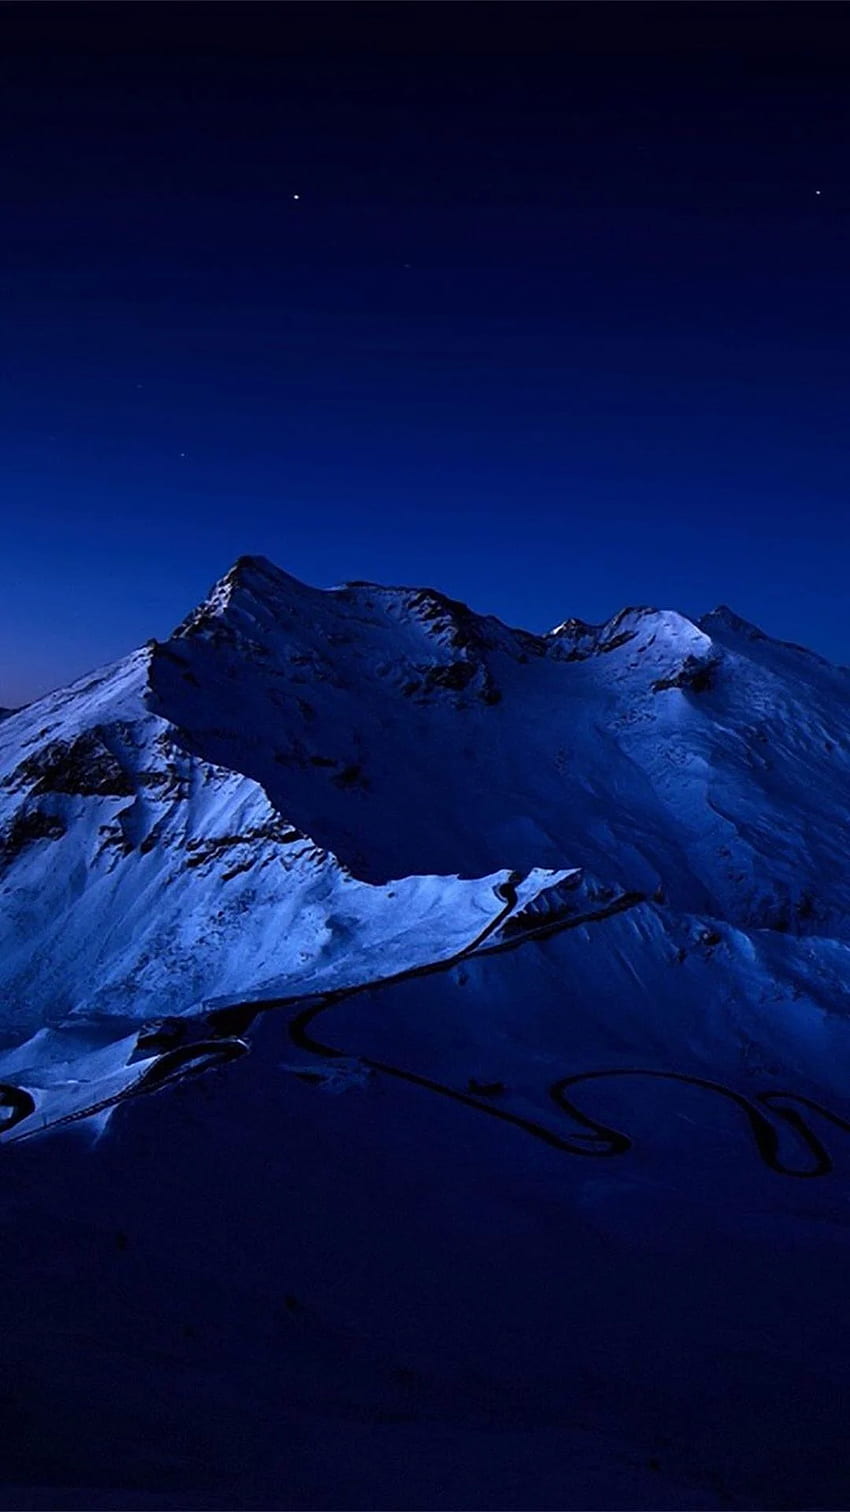 Cielo nocturno sobre el pico de la montaña nevada IPhone 6 Plus. Azul oscuro, azul estético oscuro, azul, montaña iOS fondo de pantalla del teléfono